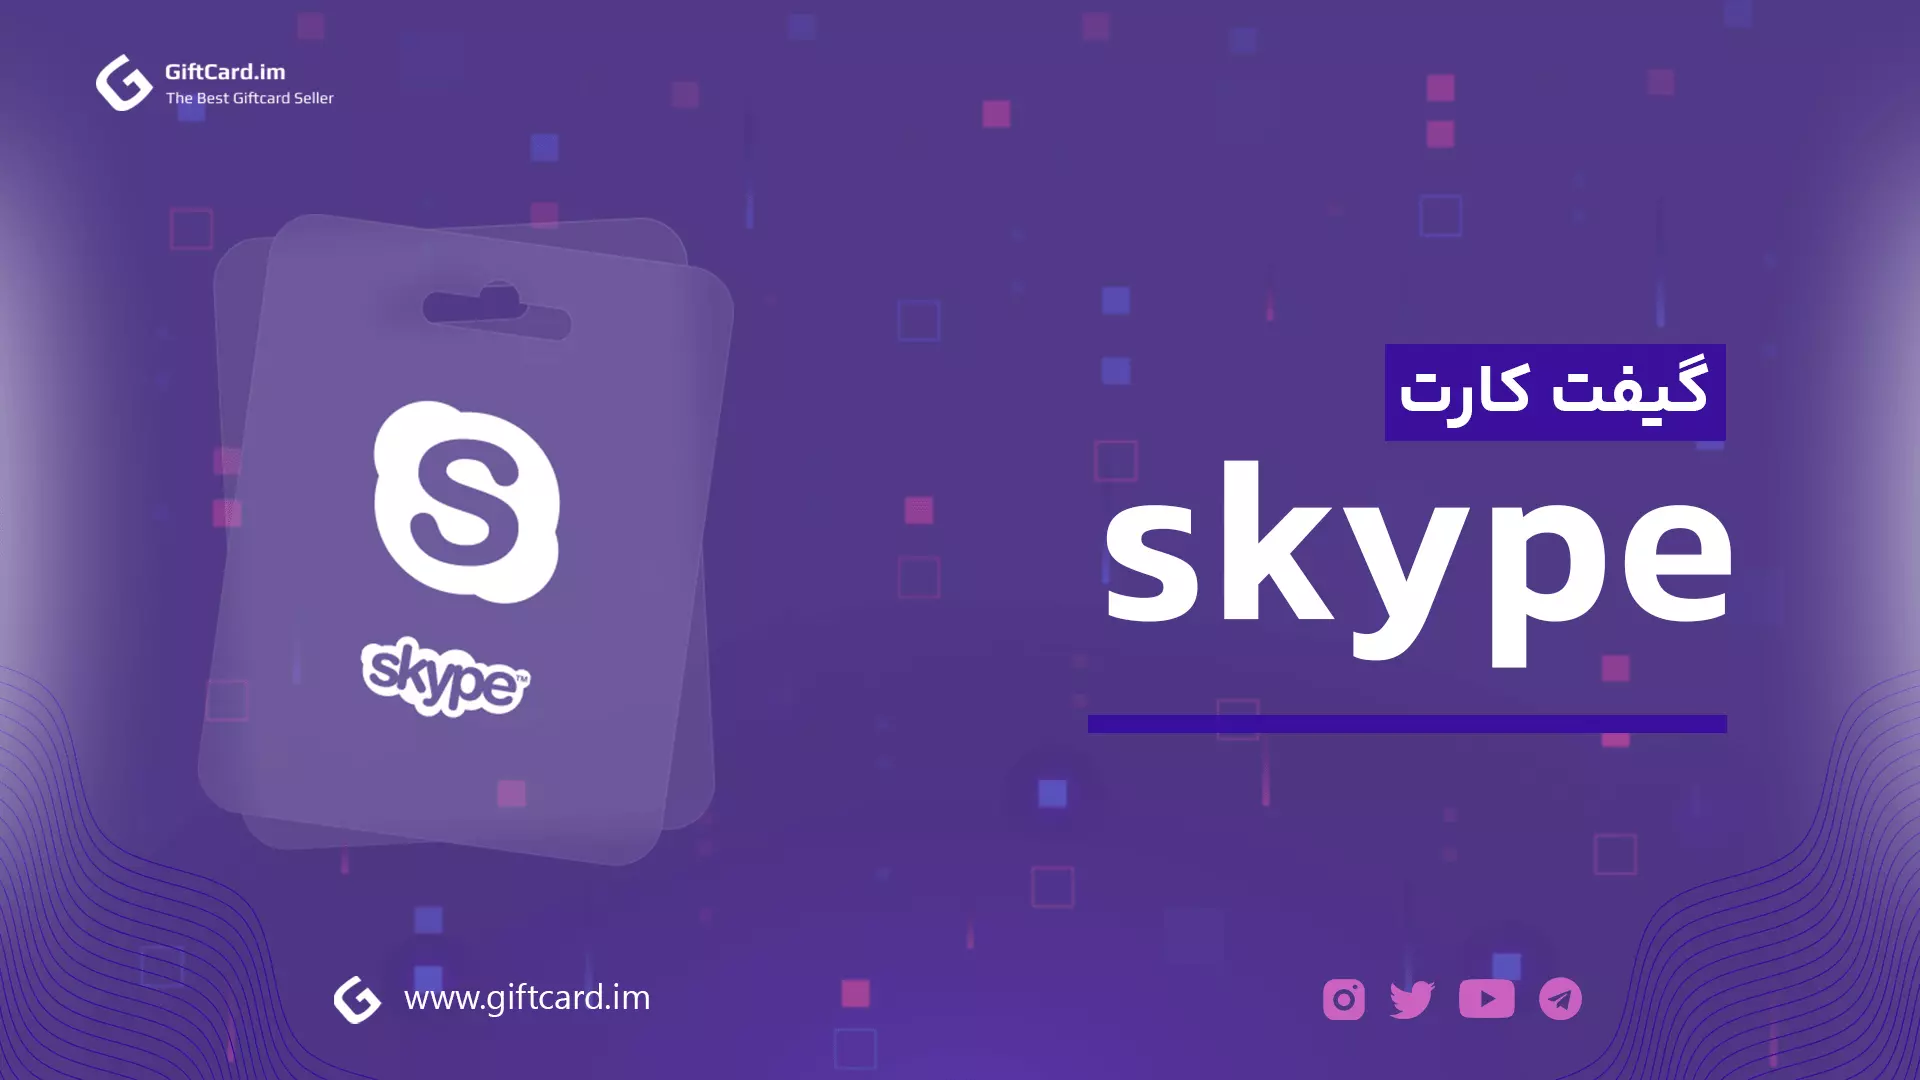 گیفت کارت اسکایپ | خرید گیفت کارت اسکایپ | گیف کارت اسکایپ | خرید اسکایپ کارت | skype giftcard | skype gifcard | skype giftcart